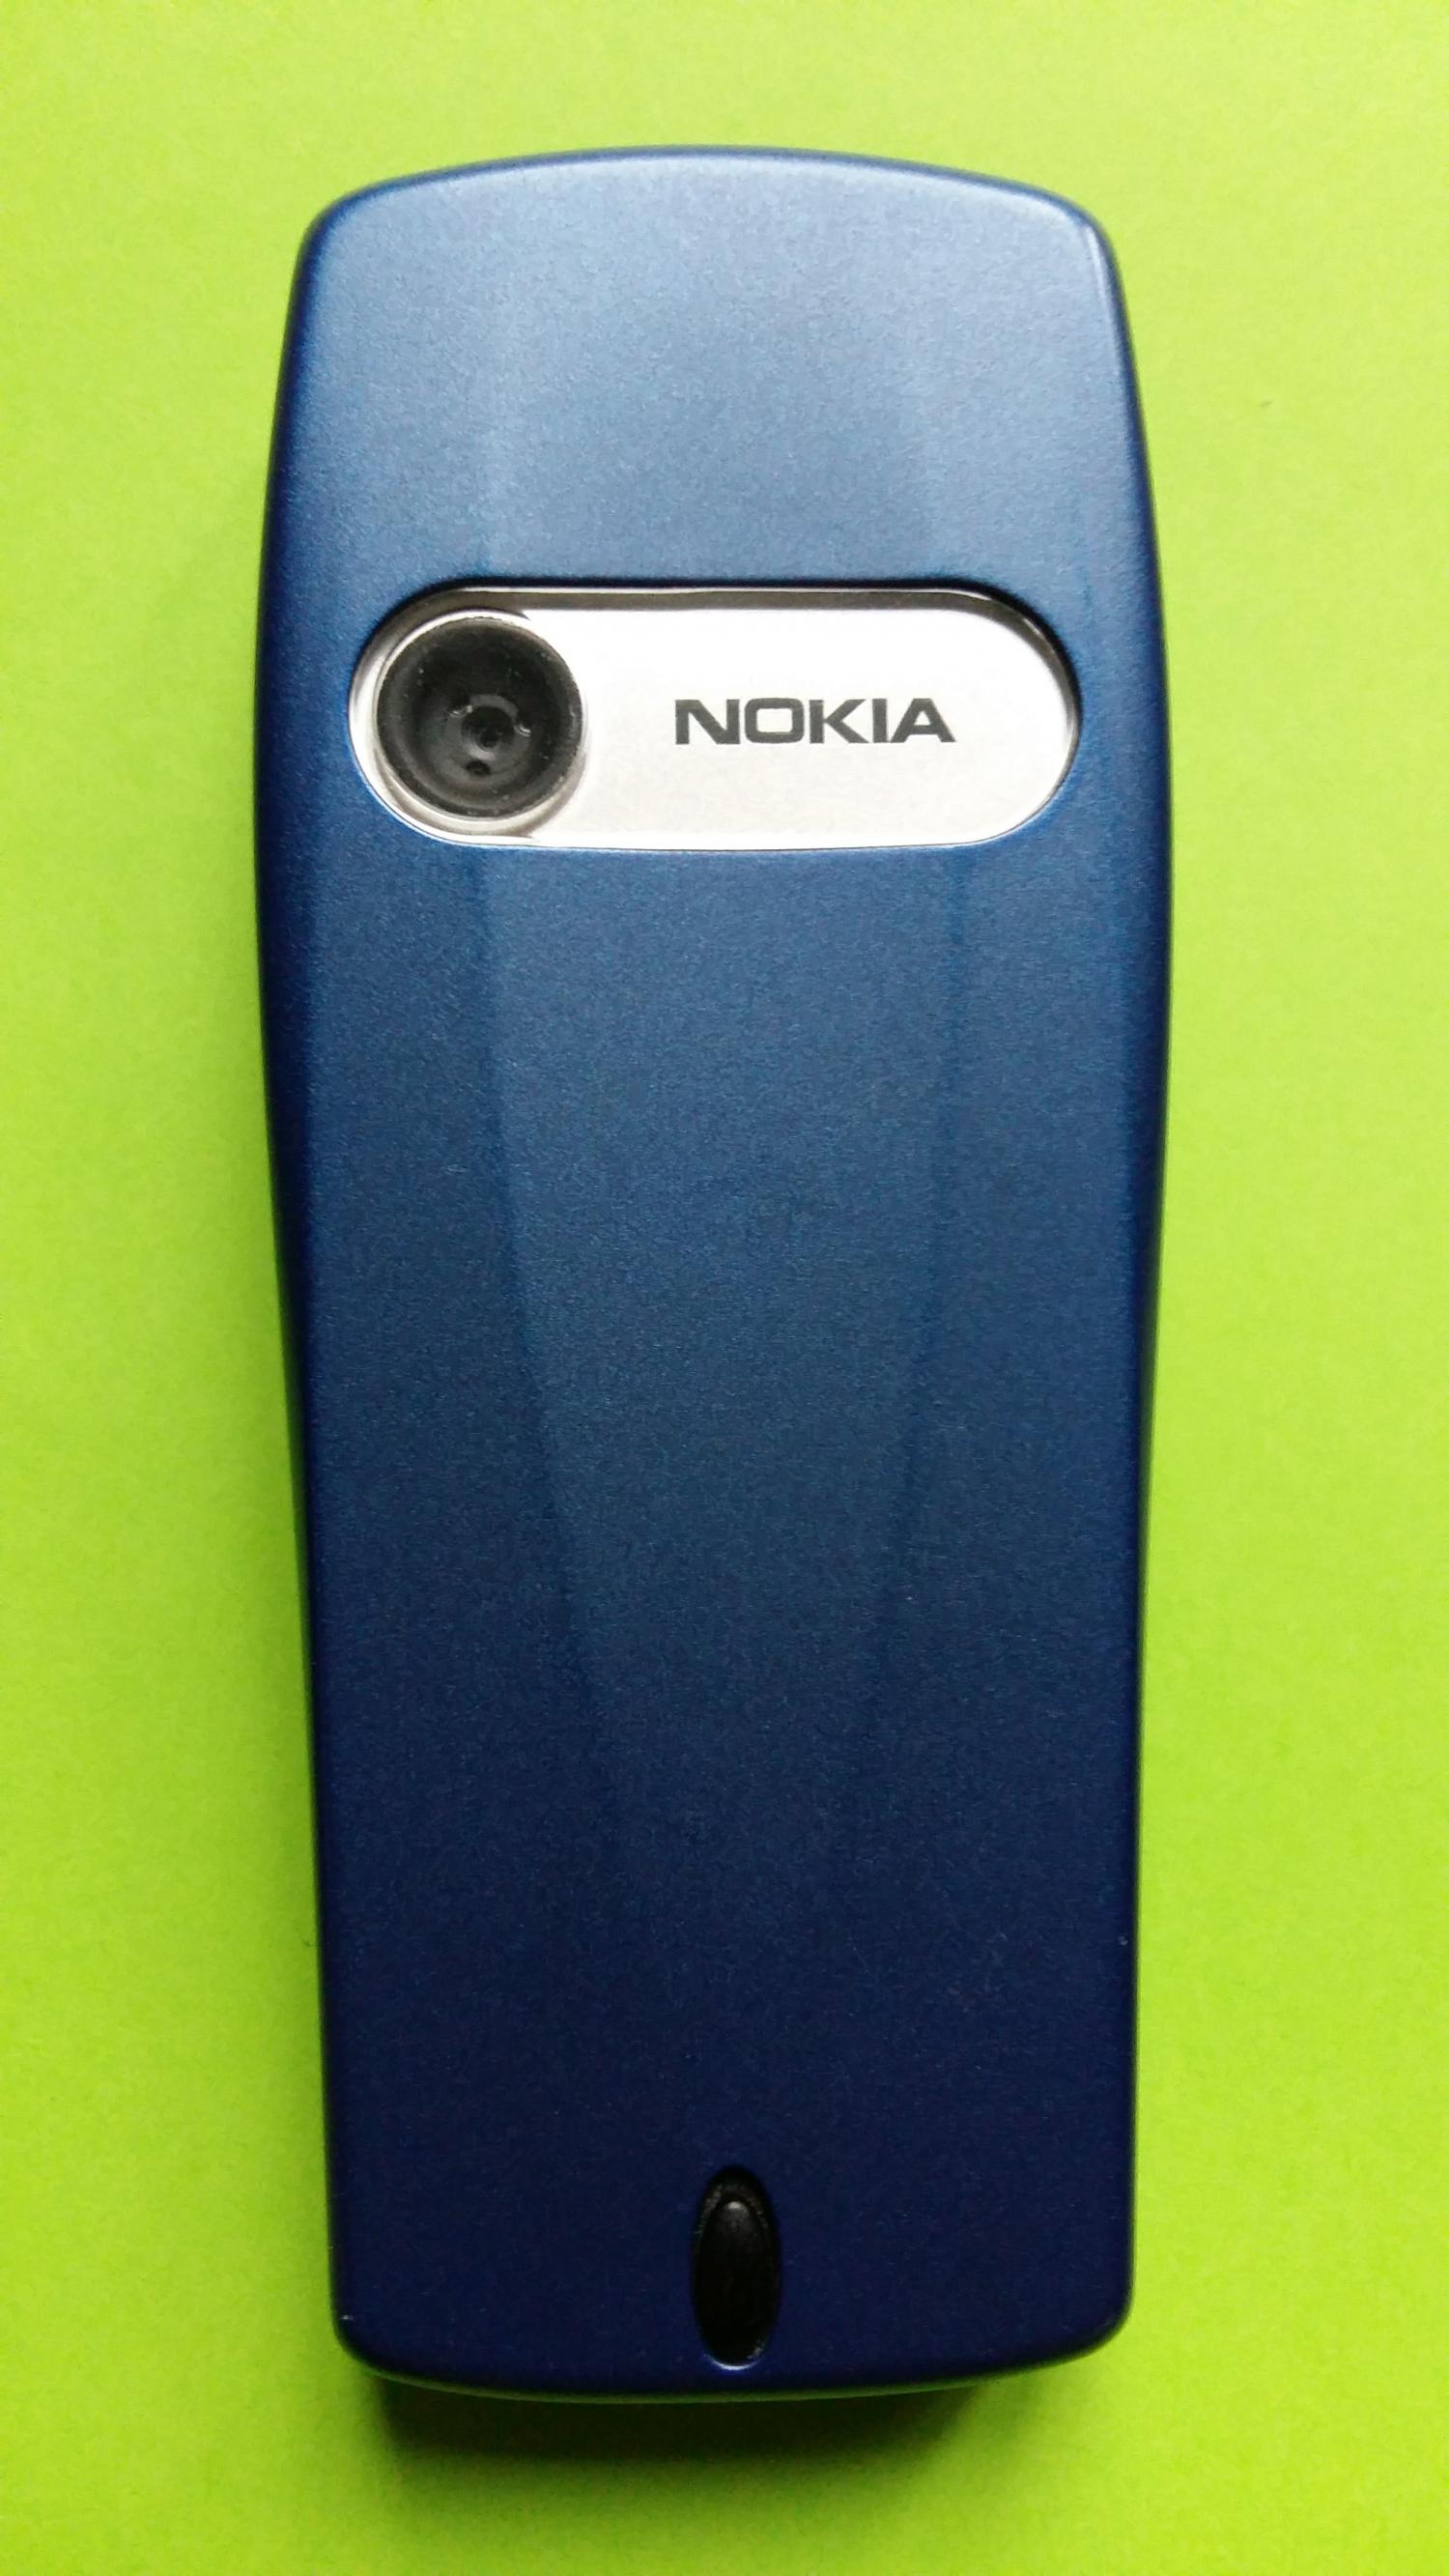 image-7336772-Nokia 6610i (3)2.jpg